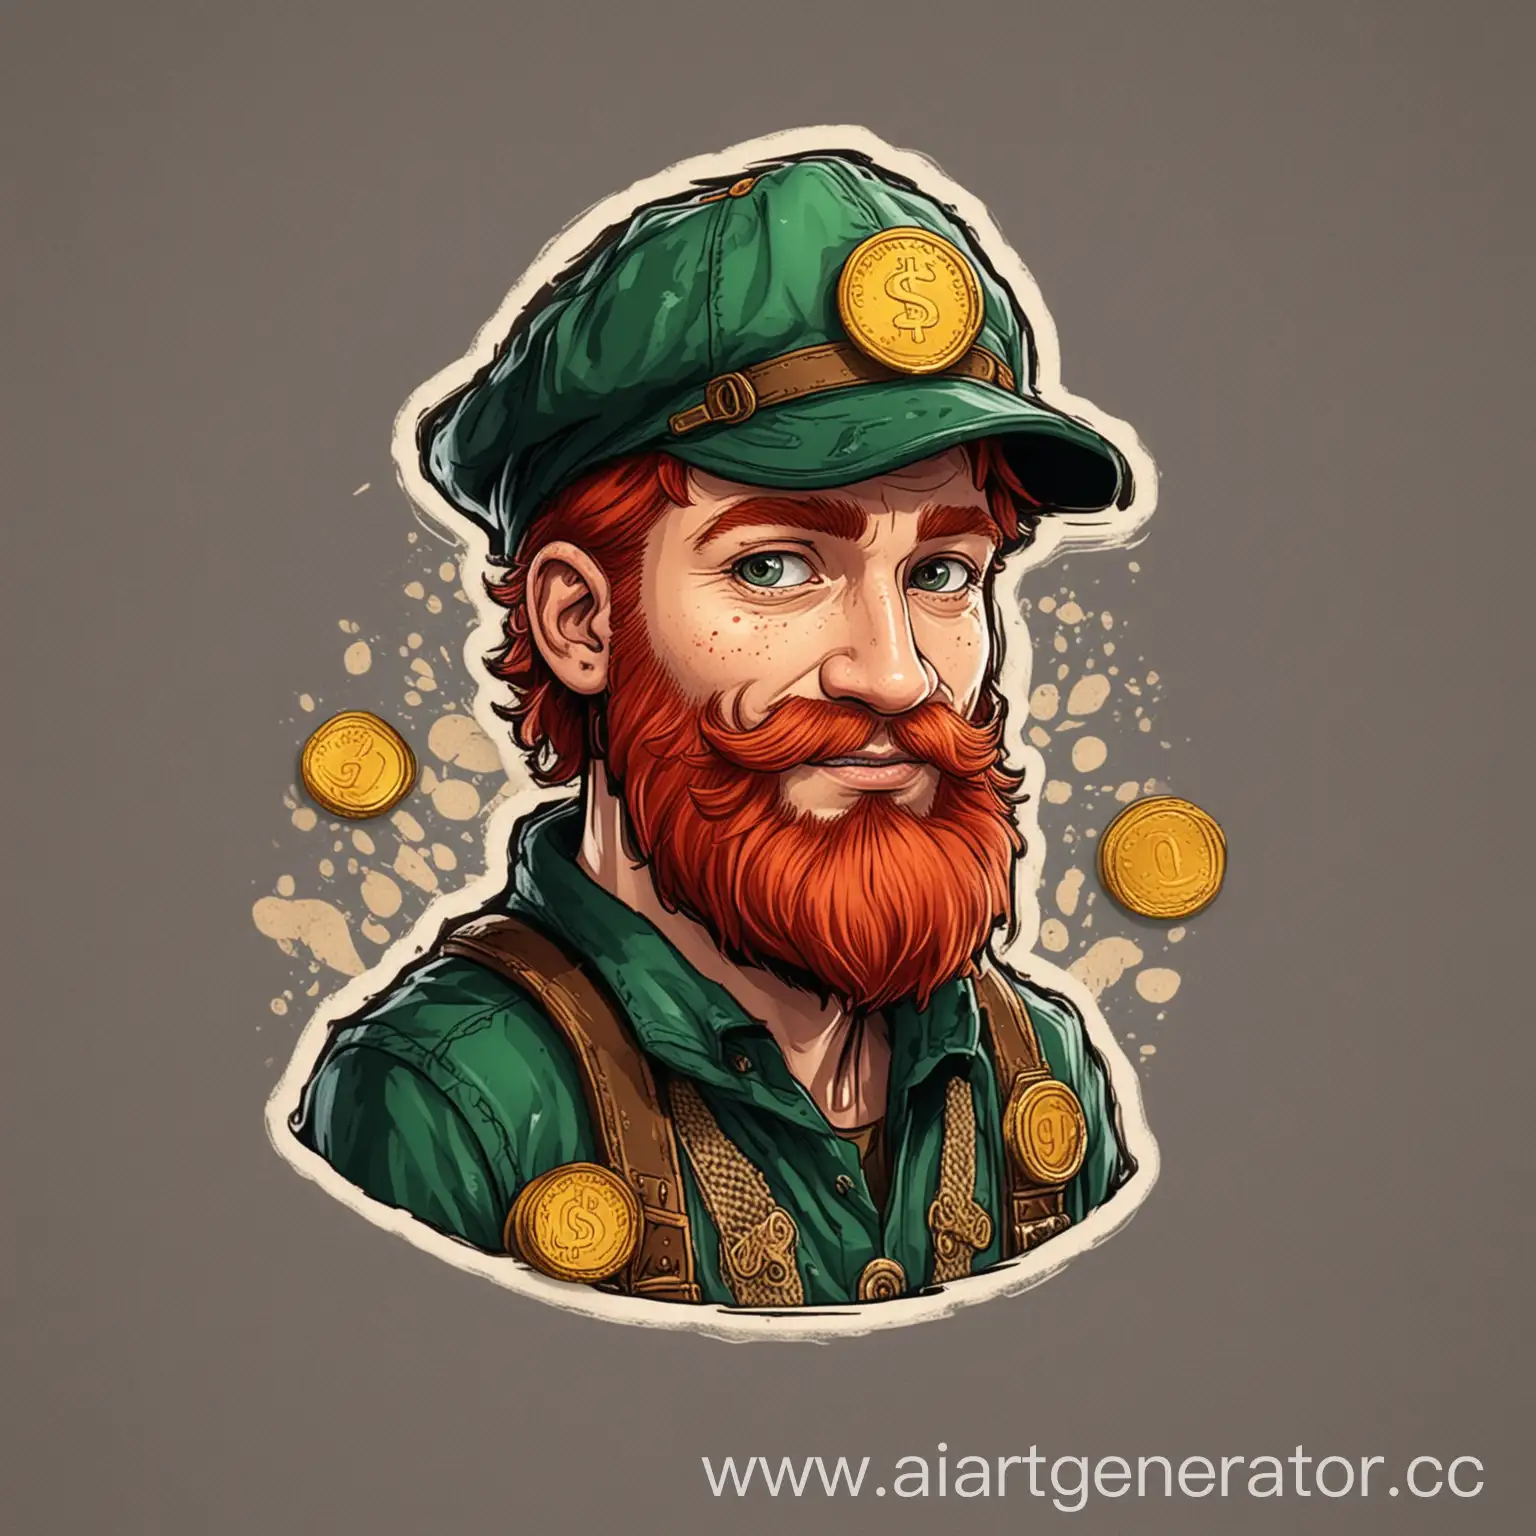 Стикер png с изображением персонажа, полностью сохранить внешний вид персонажа - зелёная одежда и шляпа, рыжие волосы и борода, золотые монеты в руке